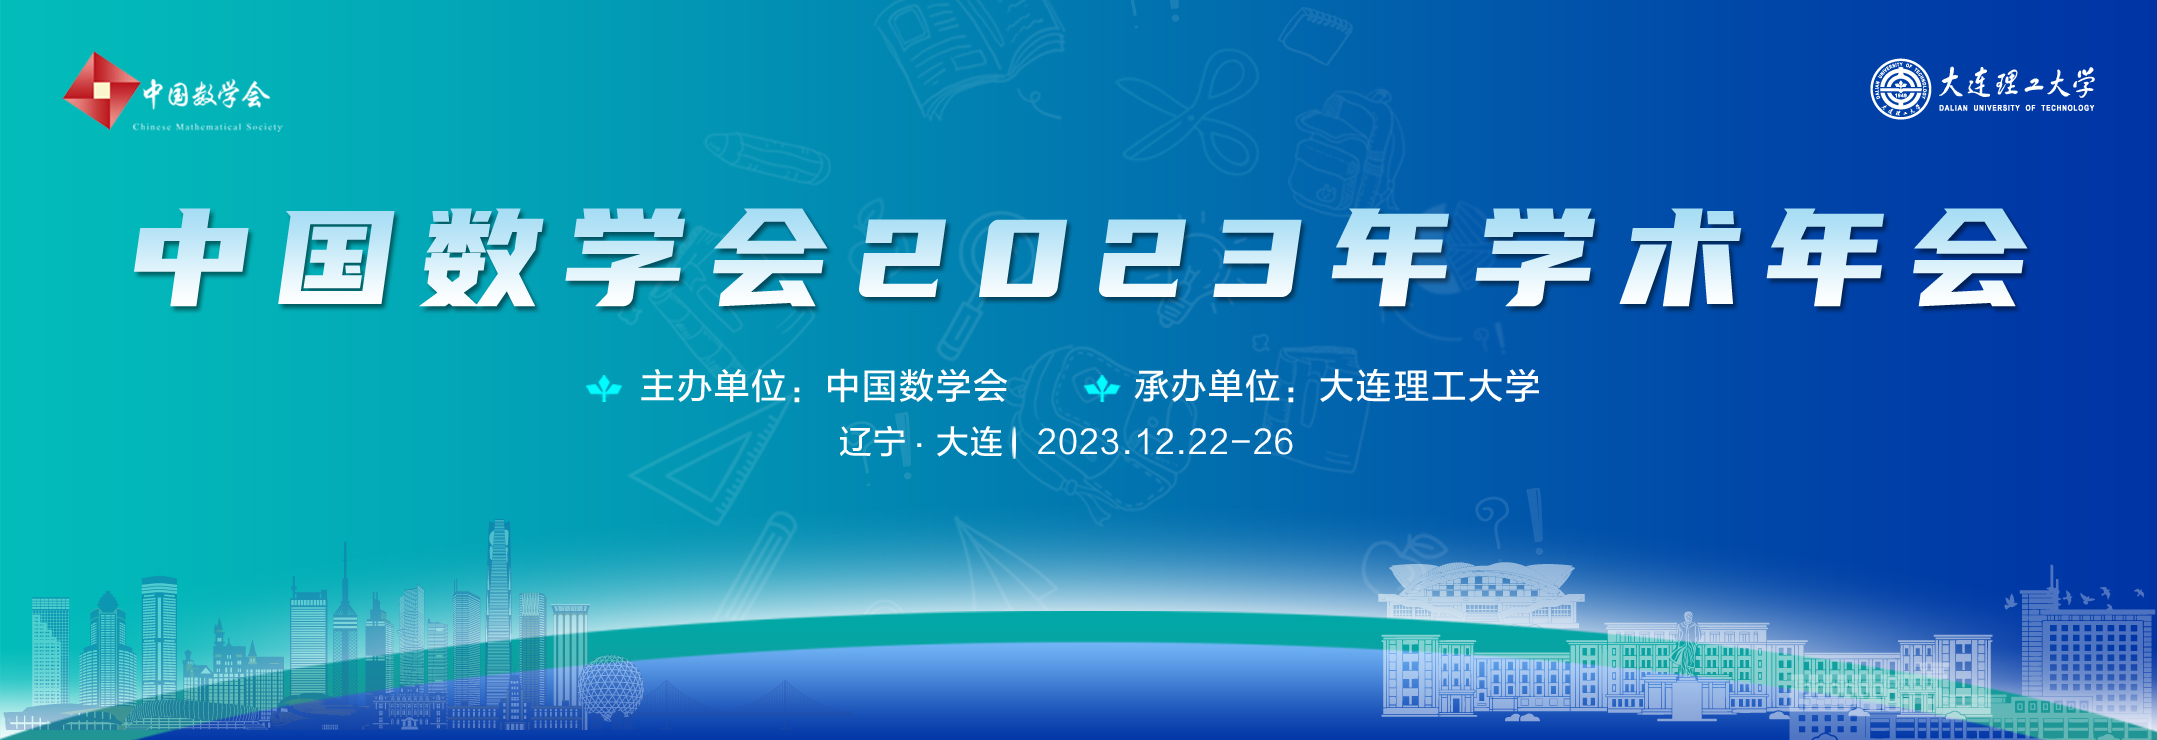 中国数学会2023年学术年会